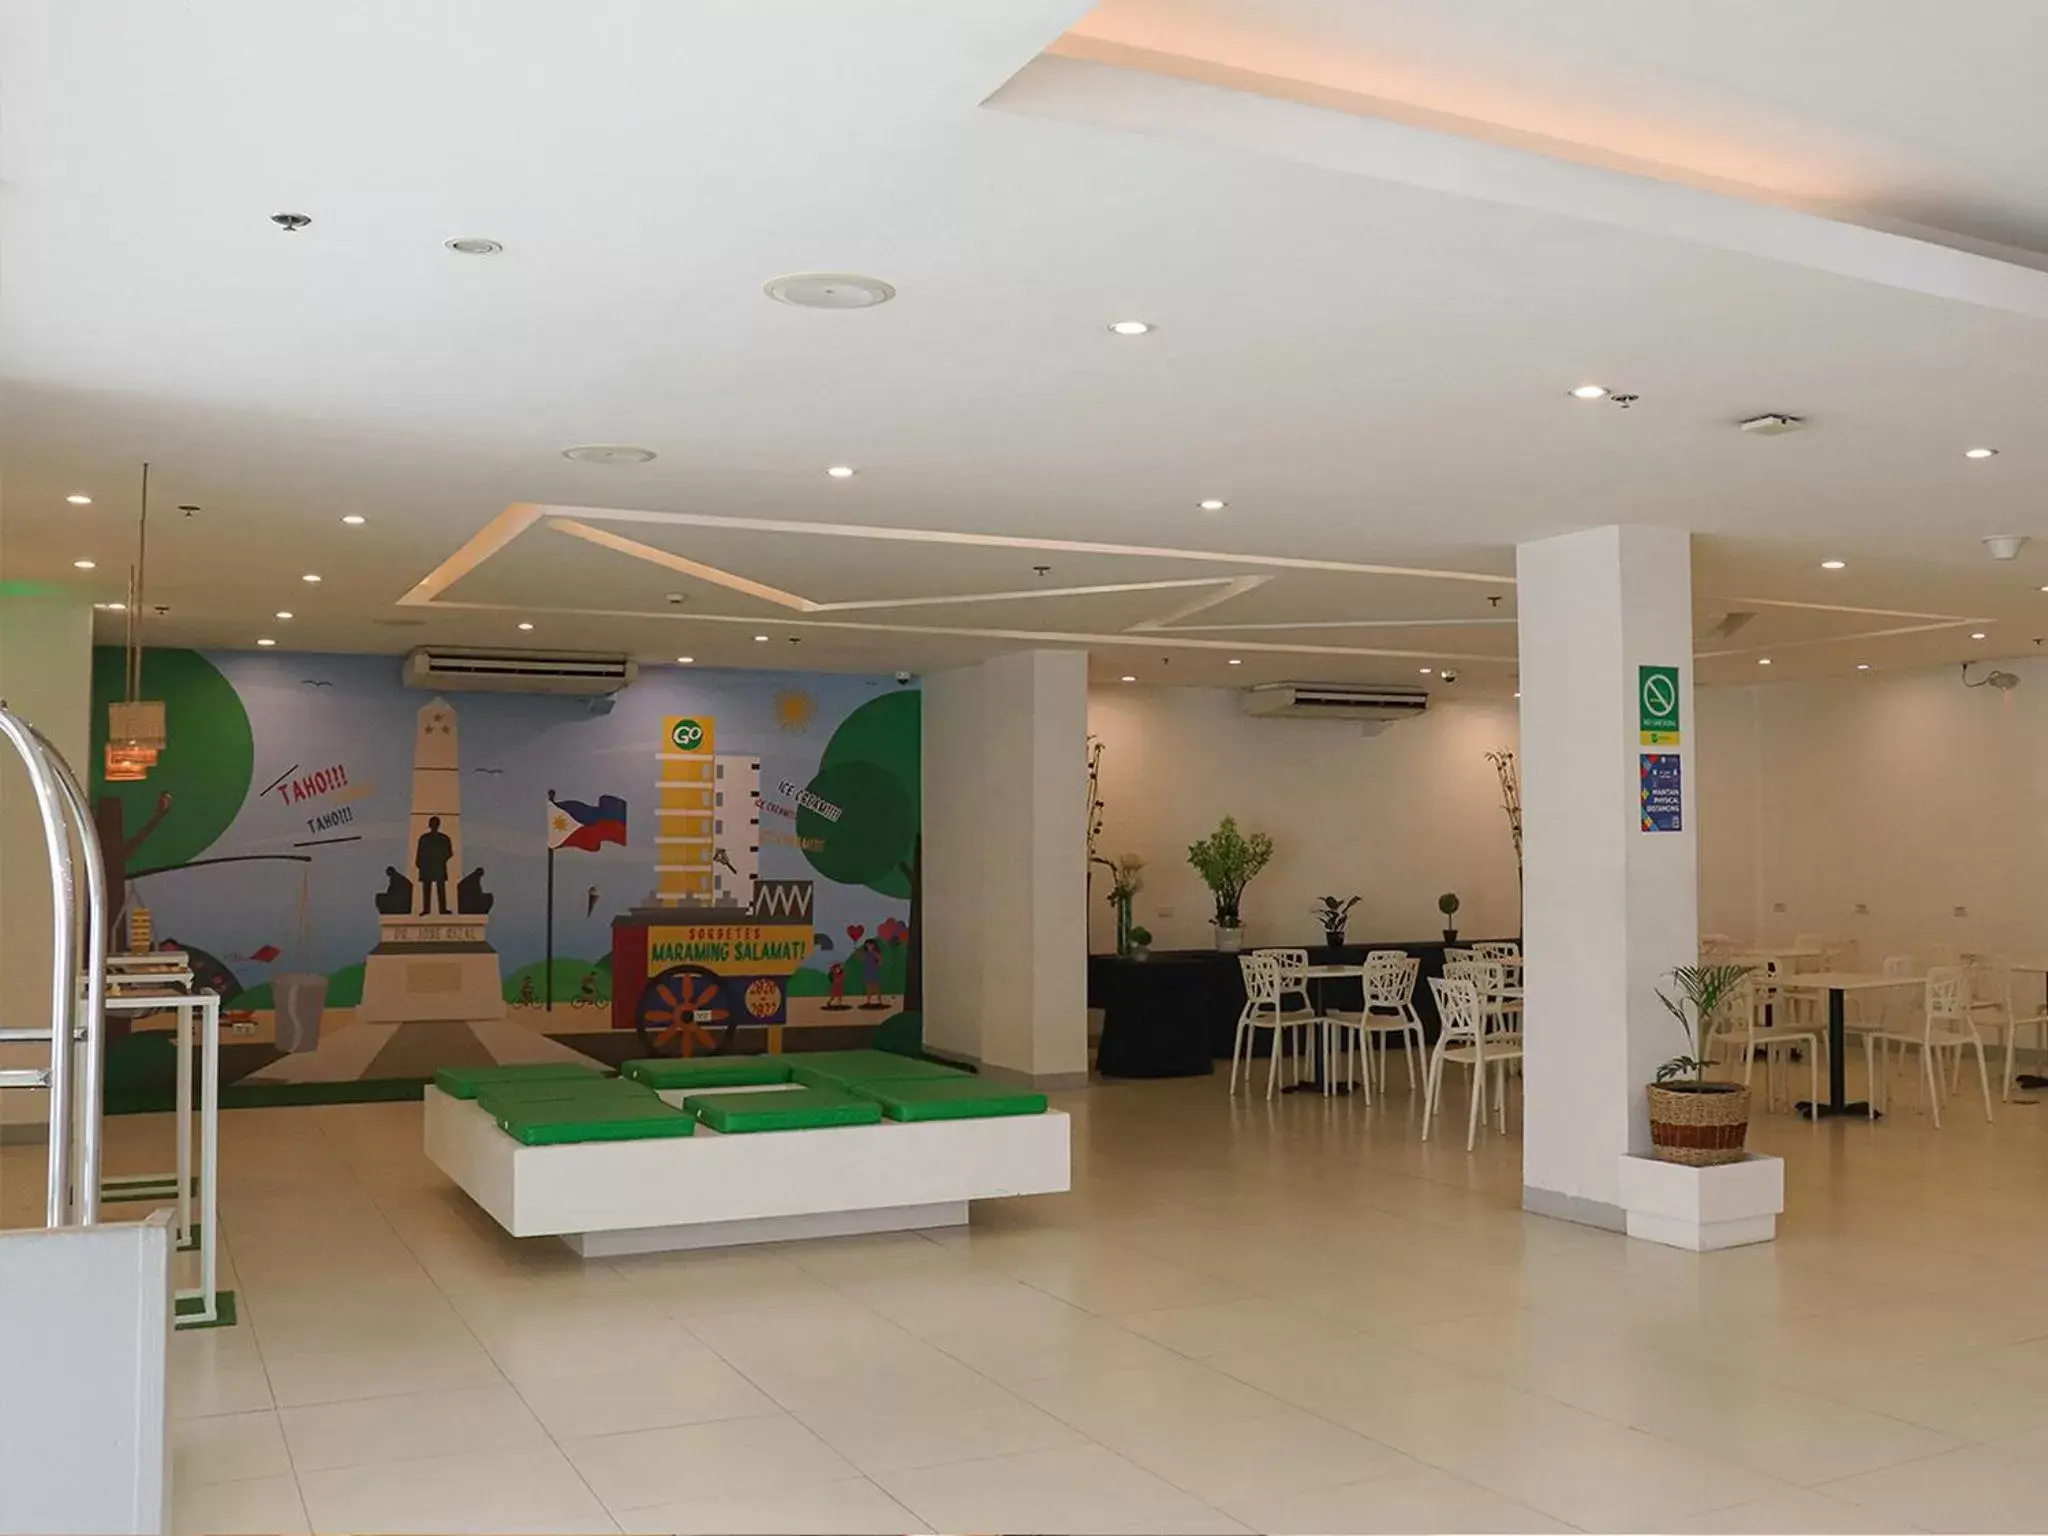 Lobby or reception in Go Hotels Ermita, Manila